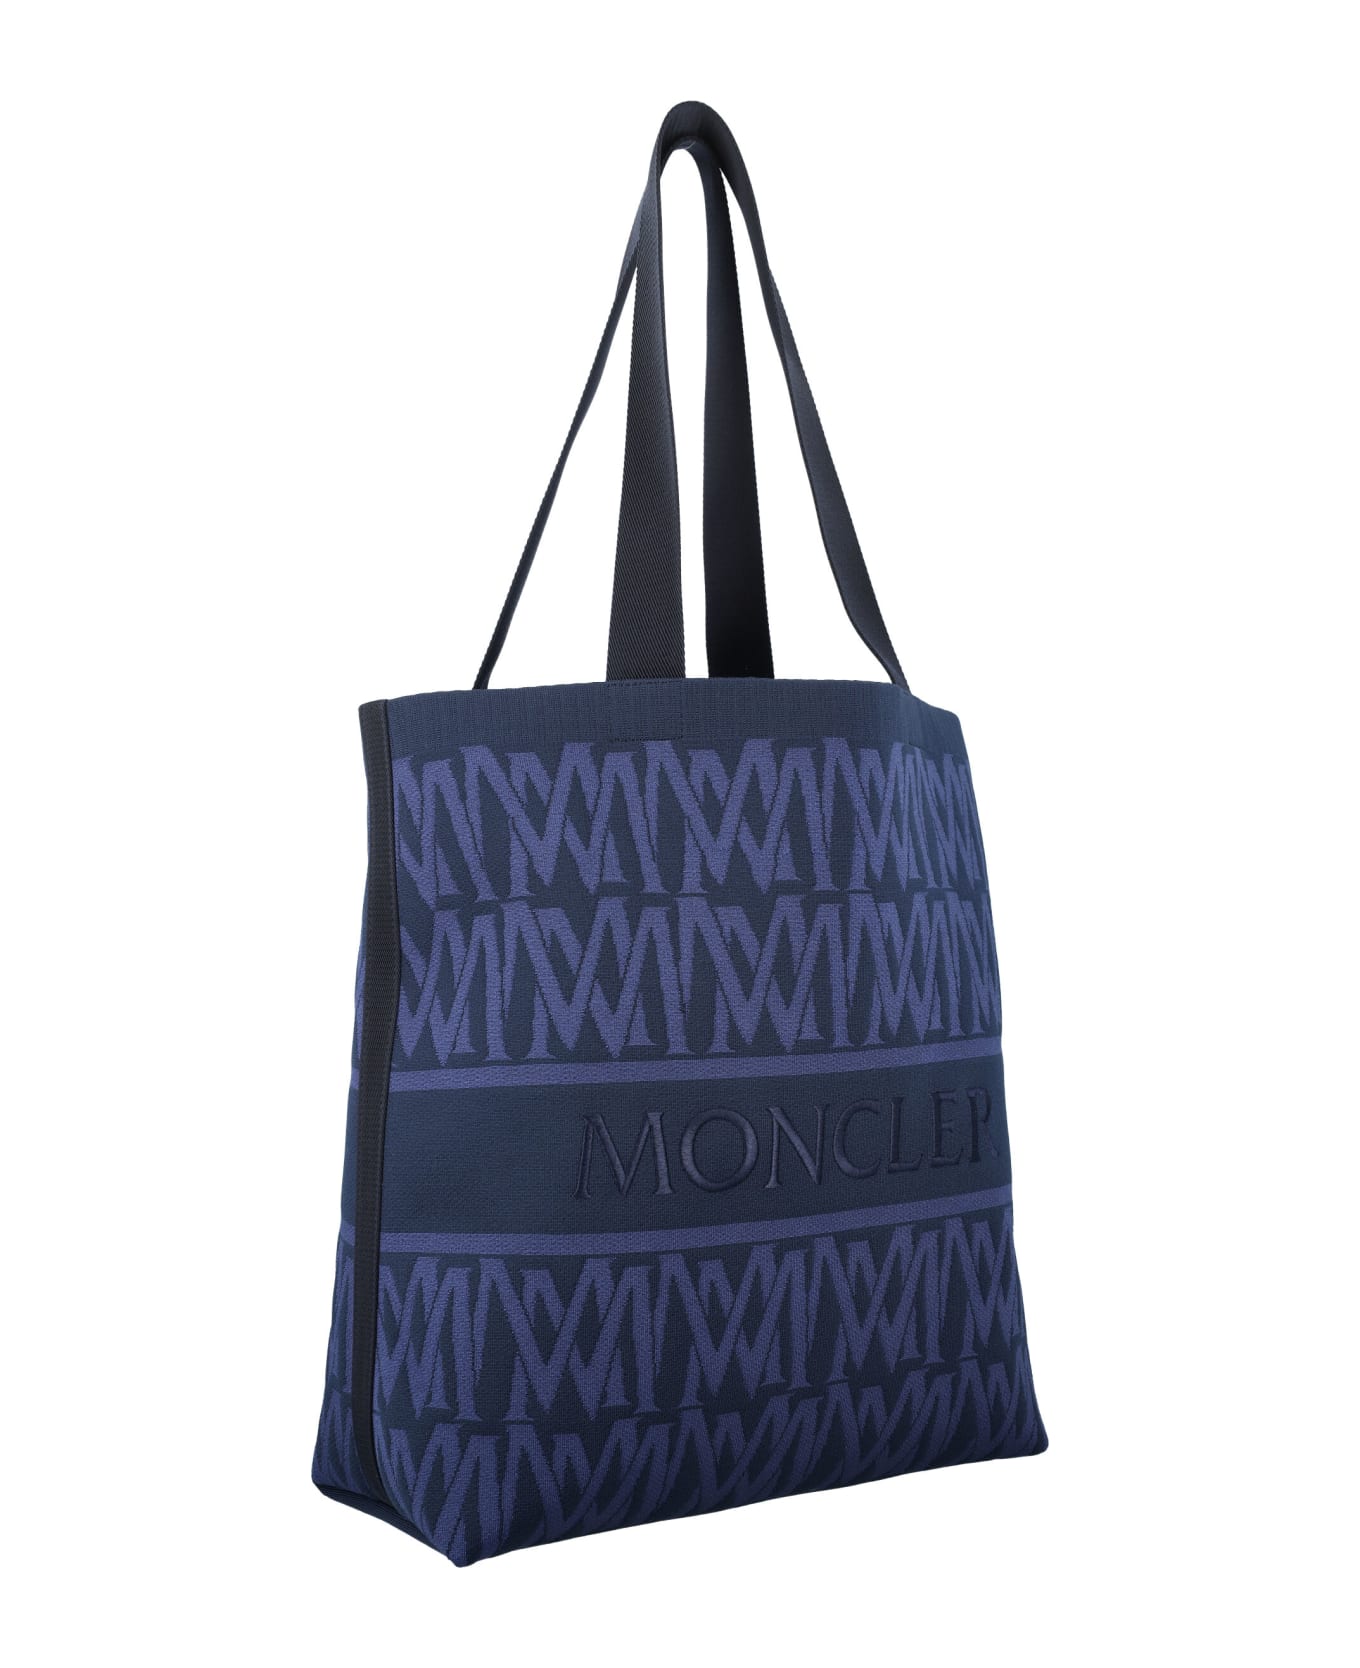 Moncler Monogram Knit Tote Bag - BLUE トートバッグ